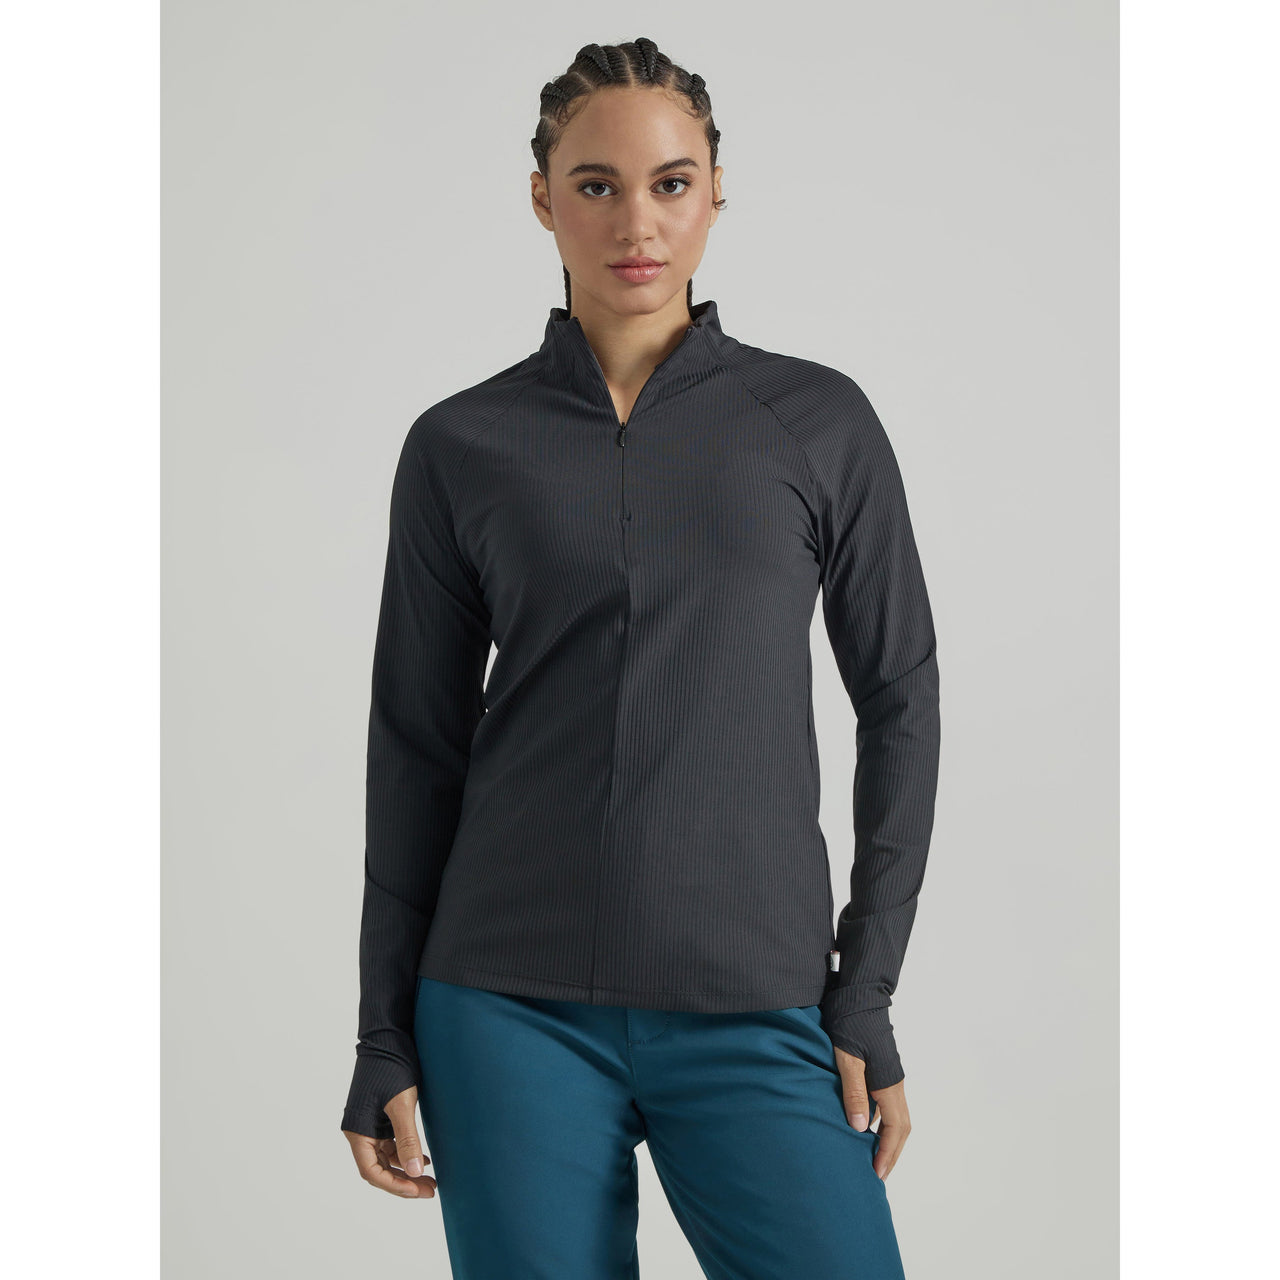 Wrangler Women's ATG 1/4 Zip Pullover Sweater - Black